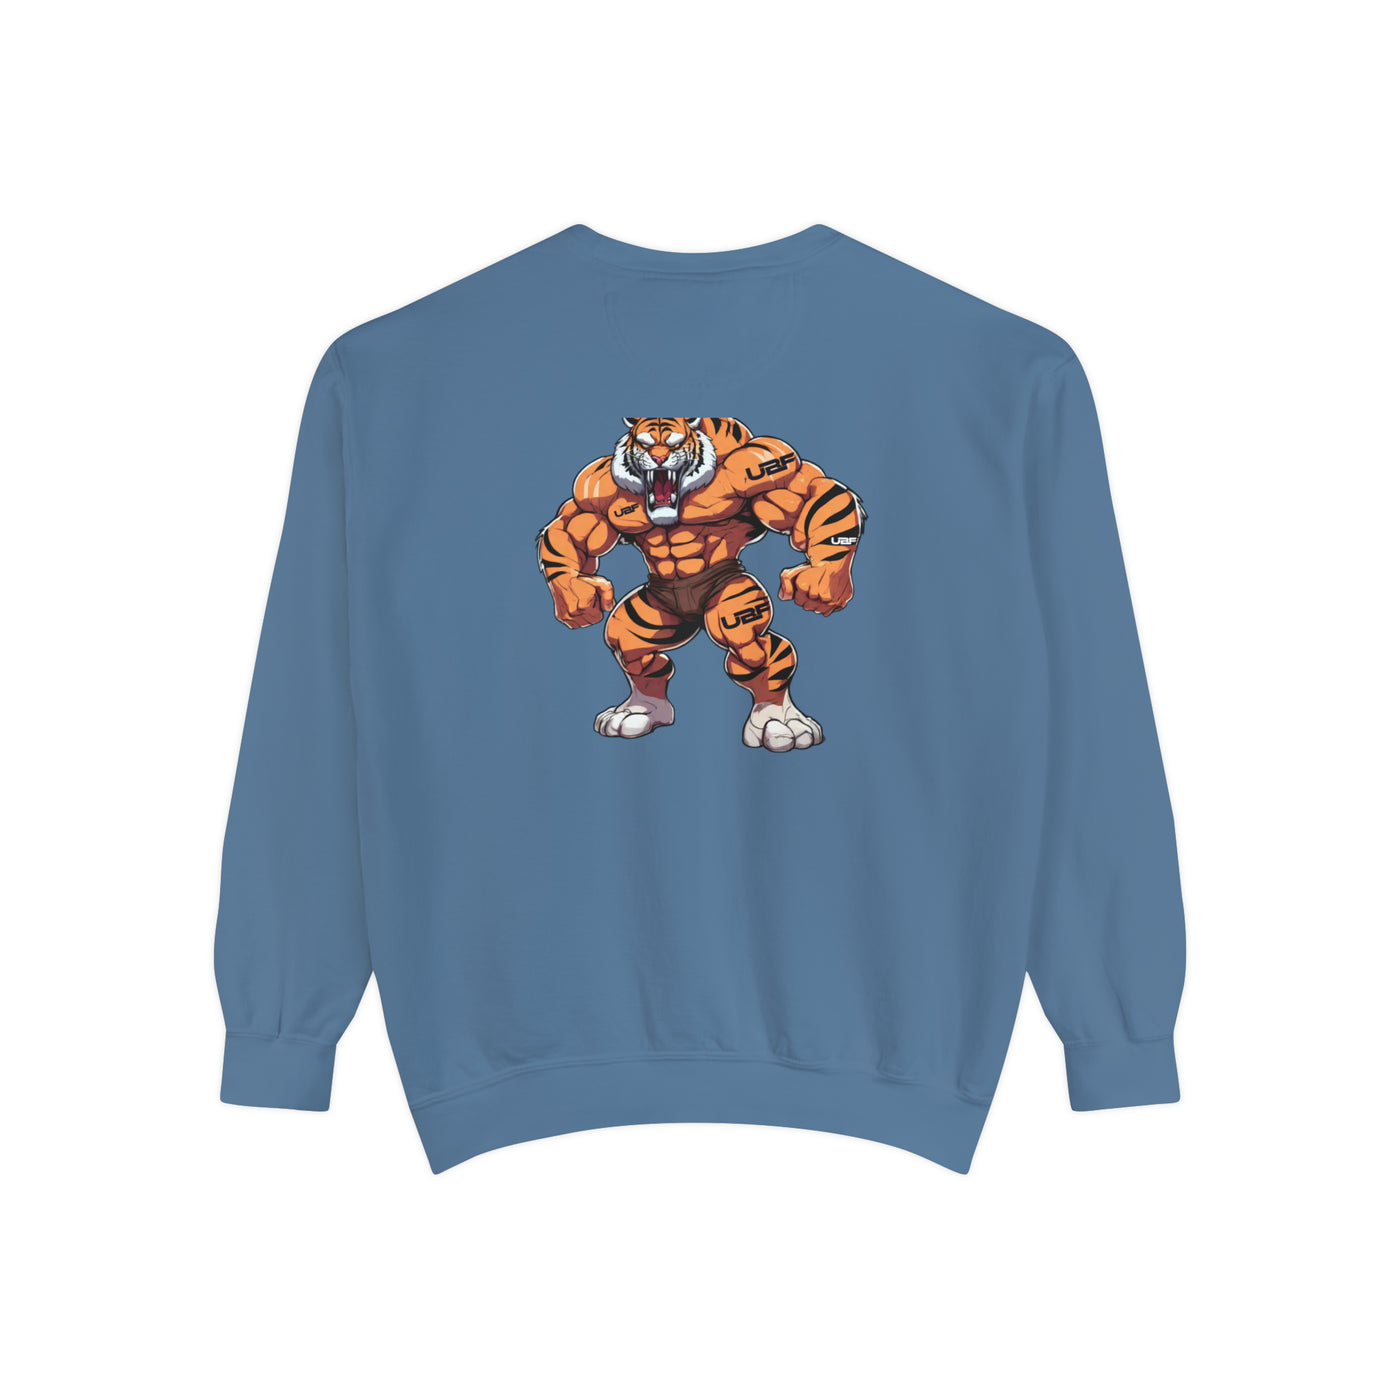 Men’s “Tatted Tiger” Garment-Dyed Sweatshirt